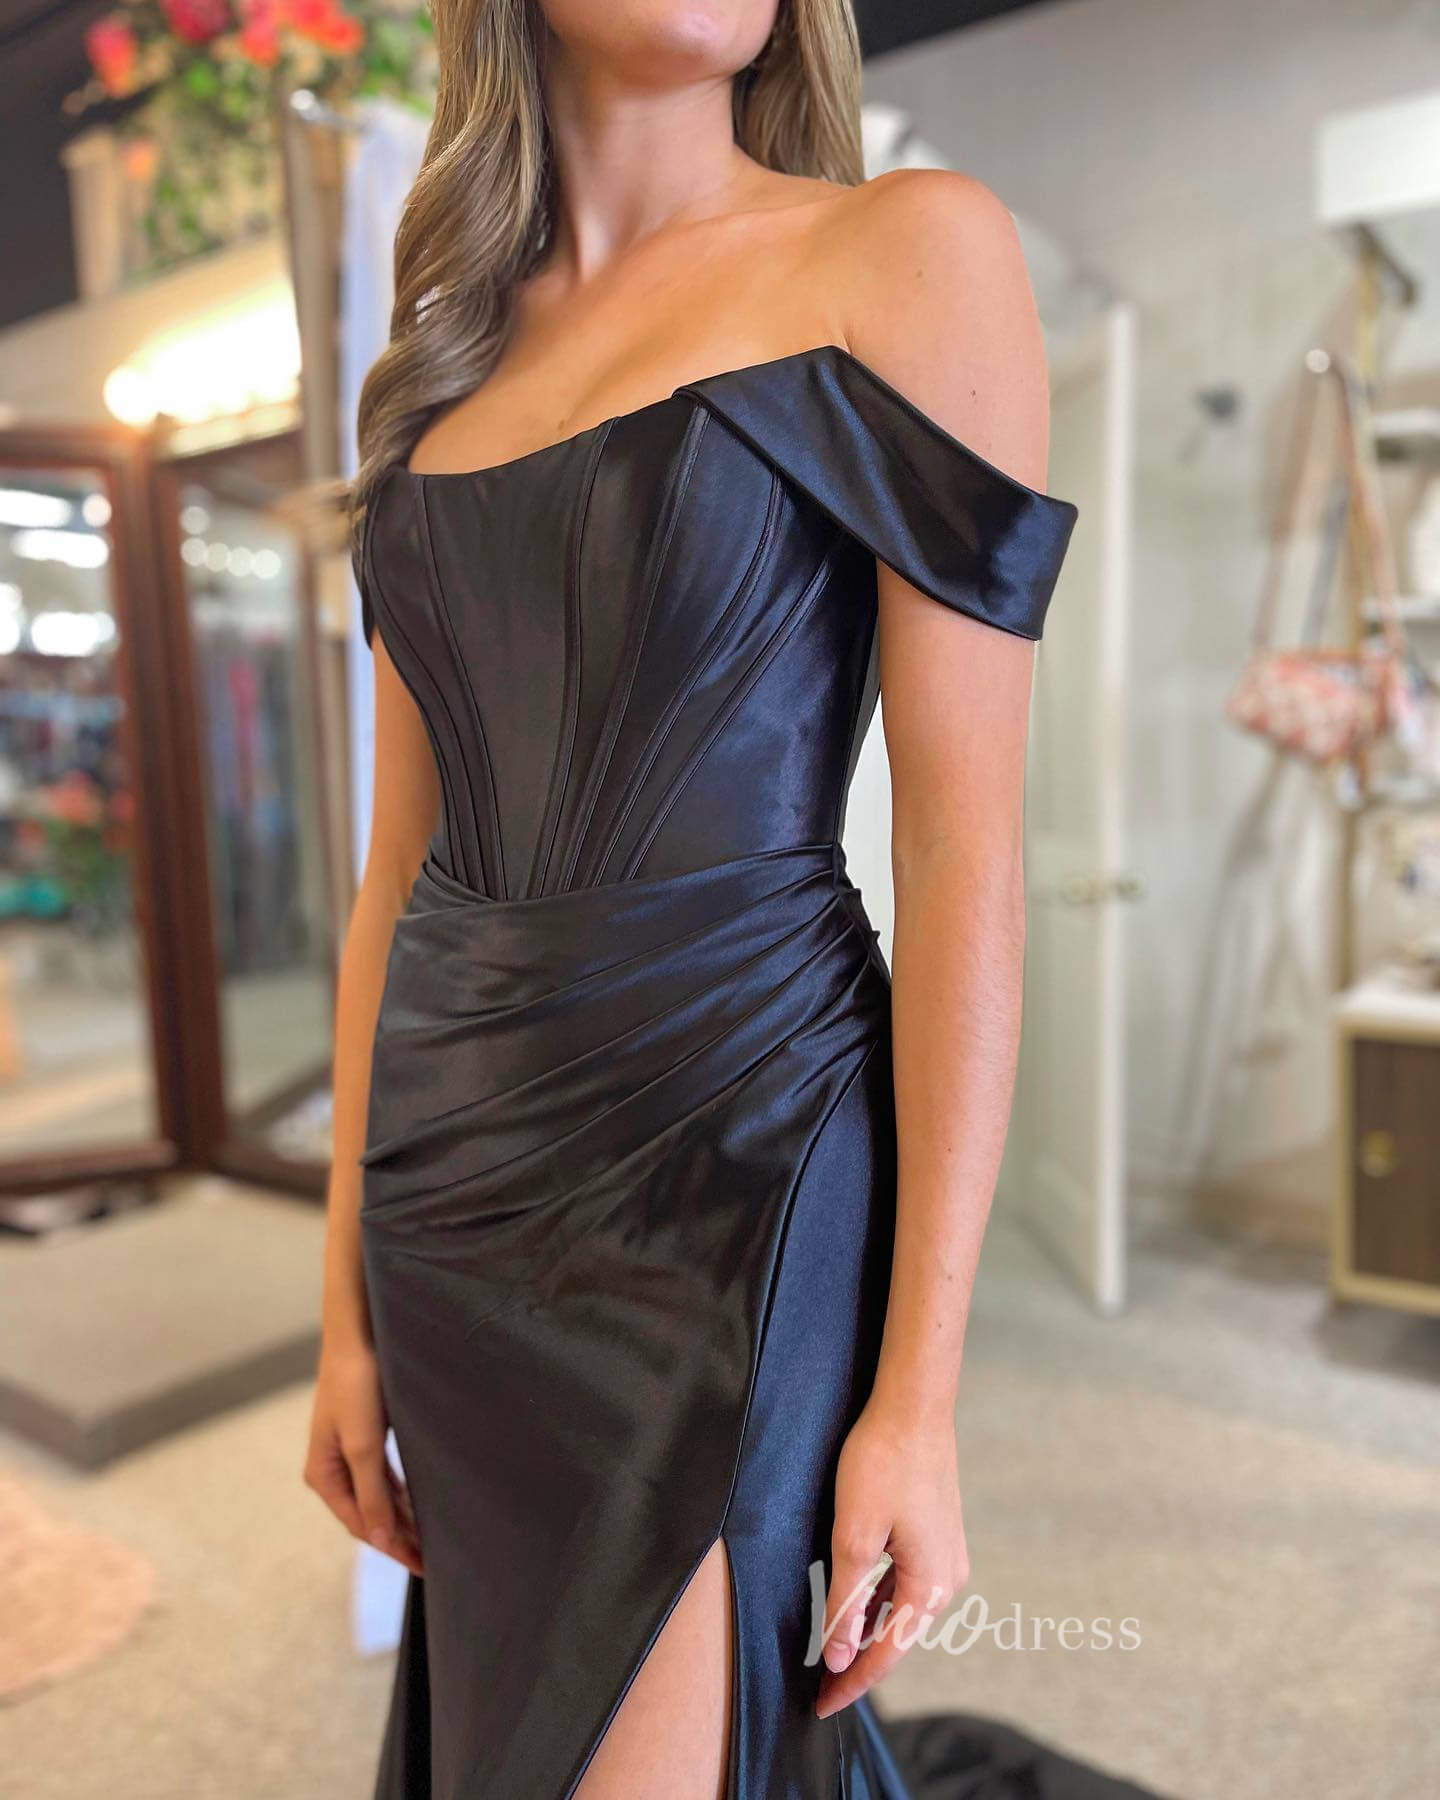 Elegant Black Satin Prom Dresses with Slit Off the Shoulder Evening Dress FD3615-prom dresses-Viniodress-Viniodress